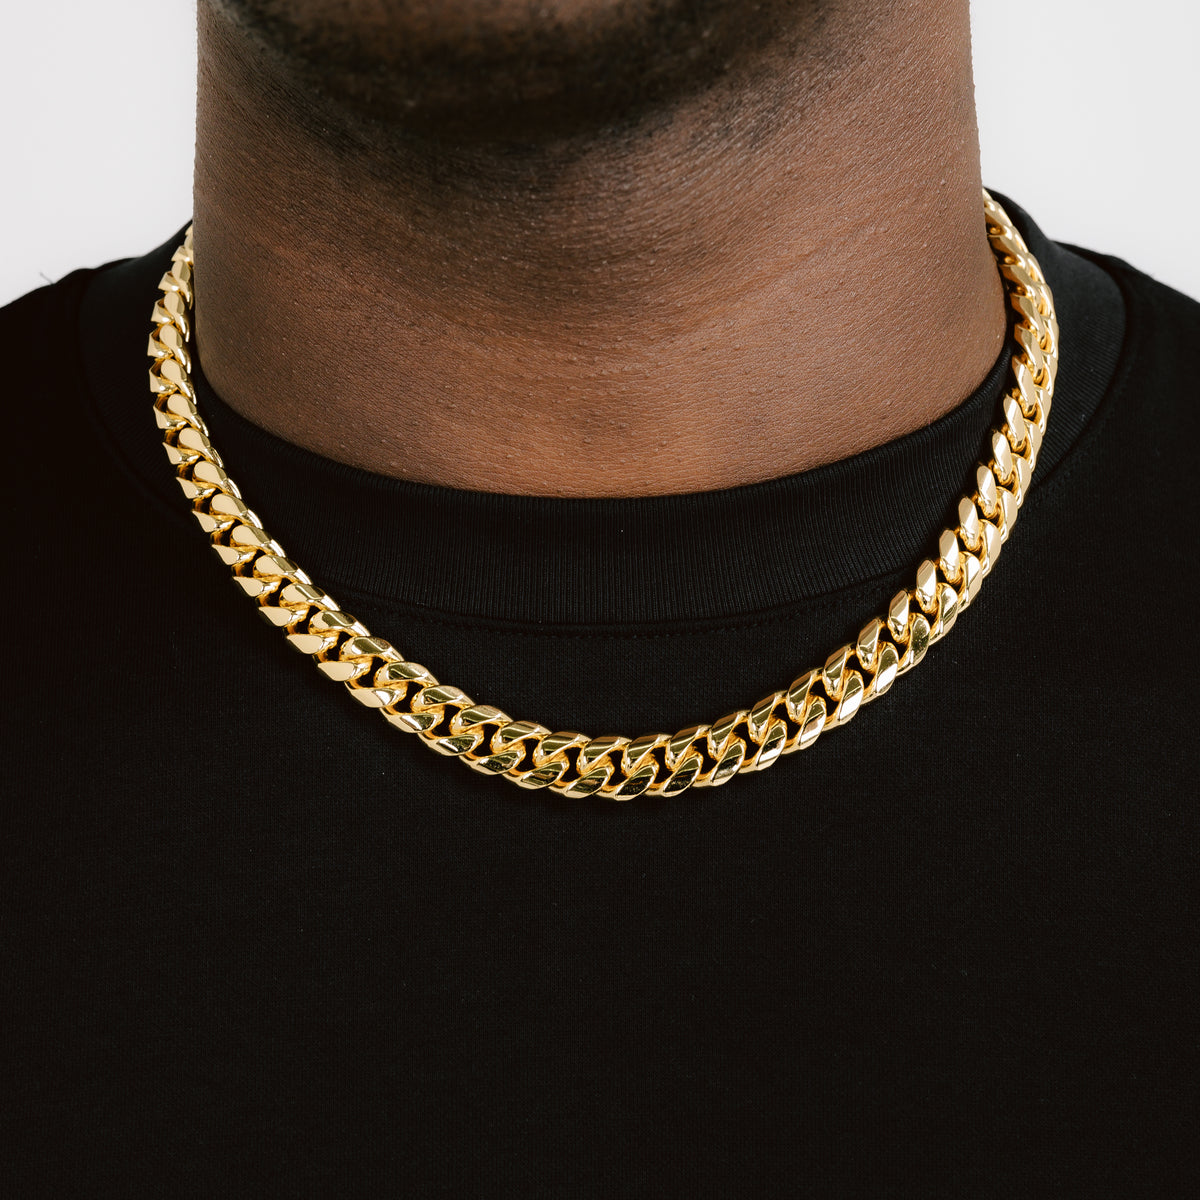 gold cuban chain